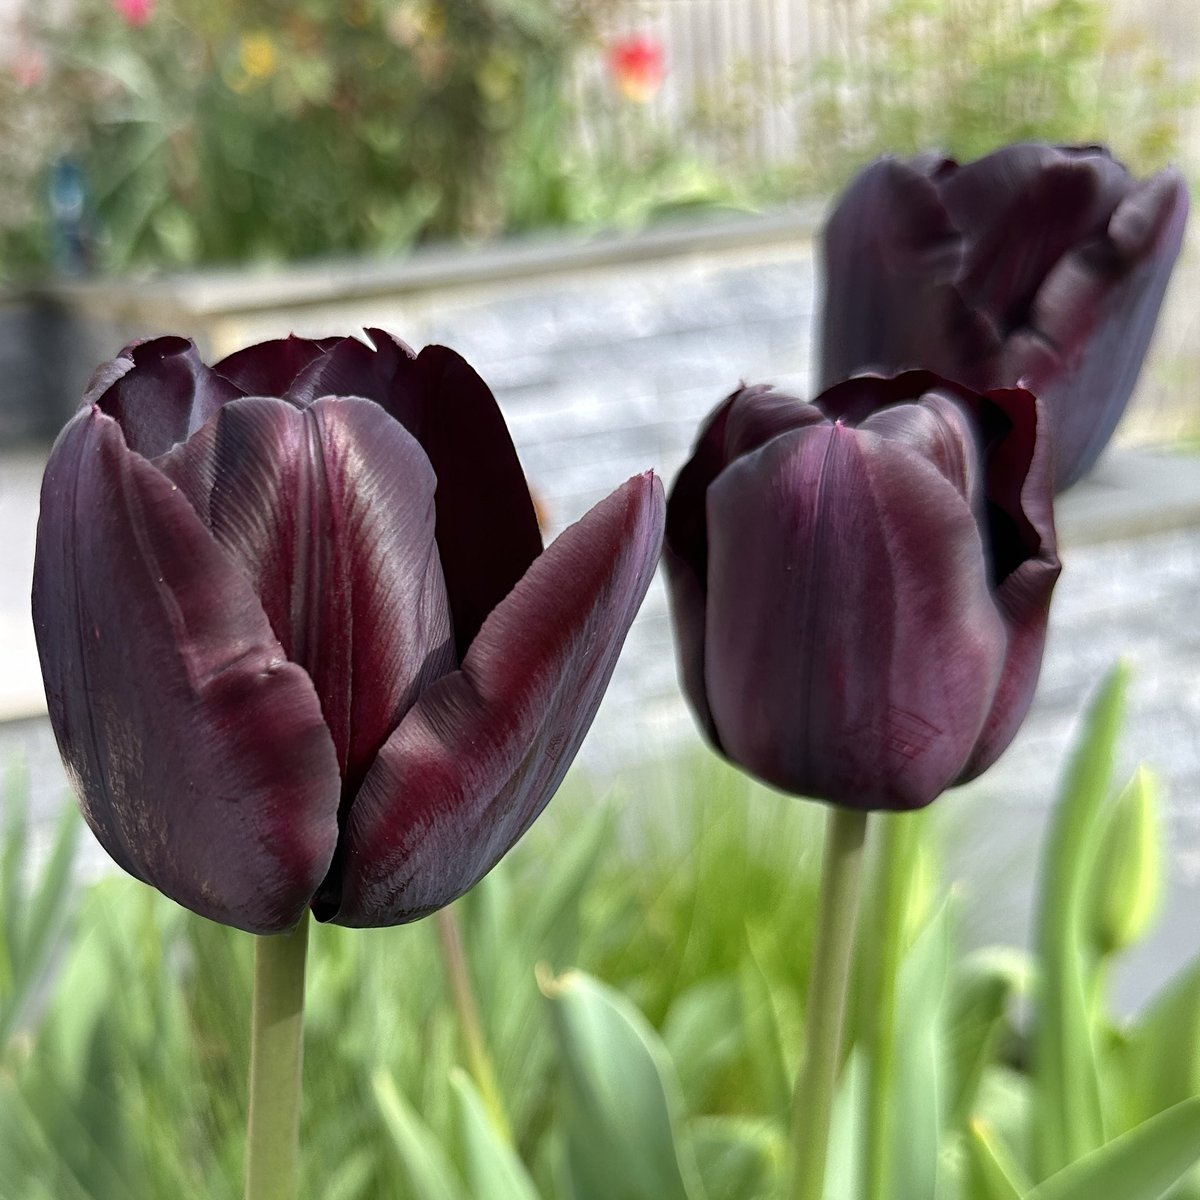 Looking dark & handsome🖤Tulip Paul Scherer🌷💜#Flowers #Gardening #Tulips